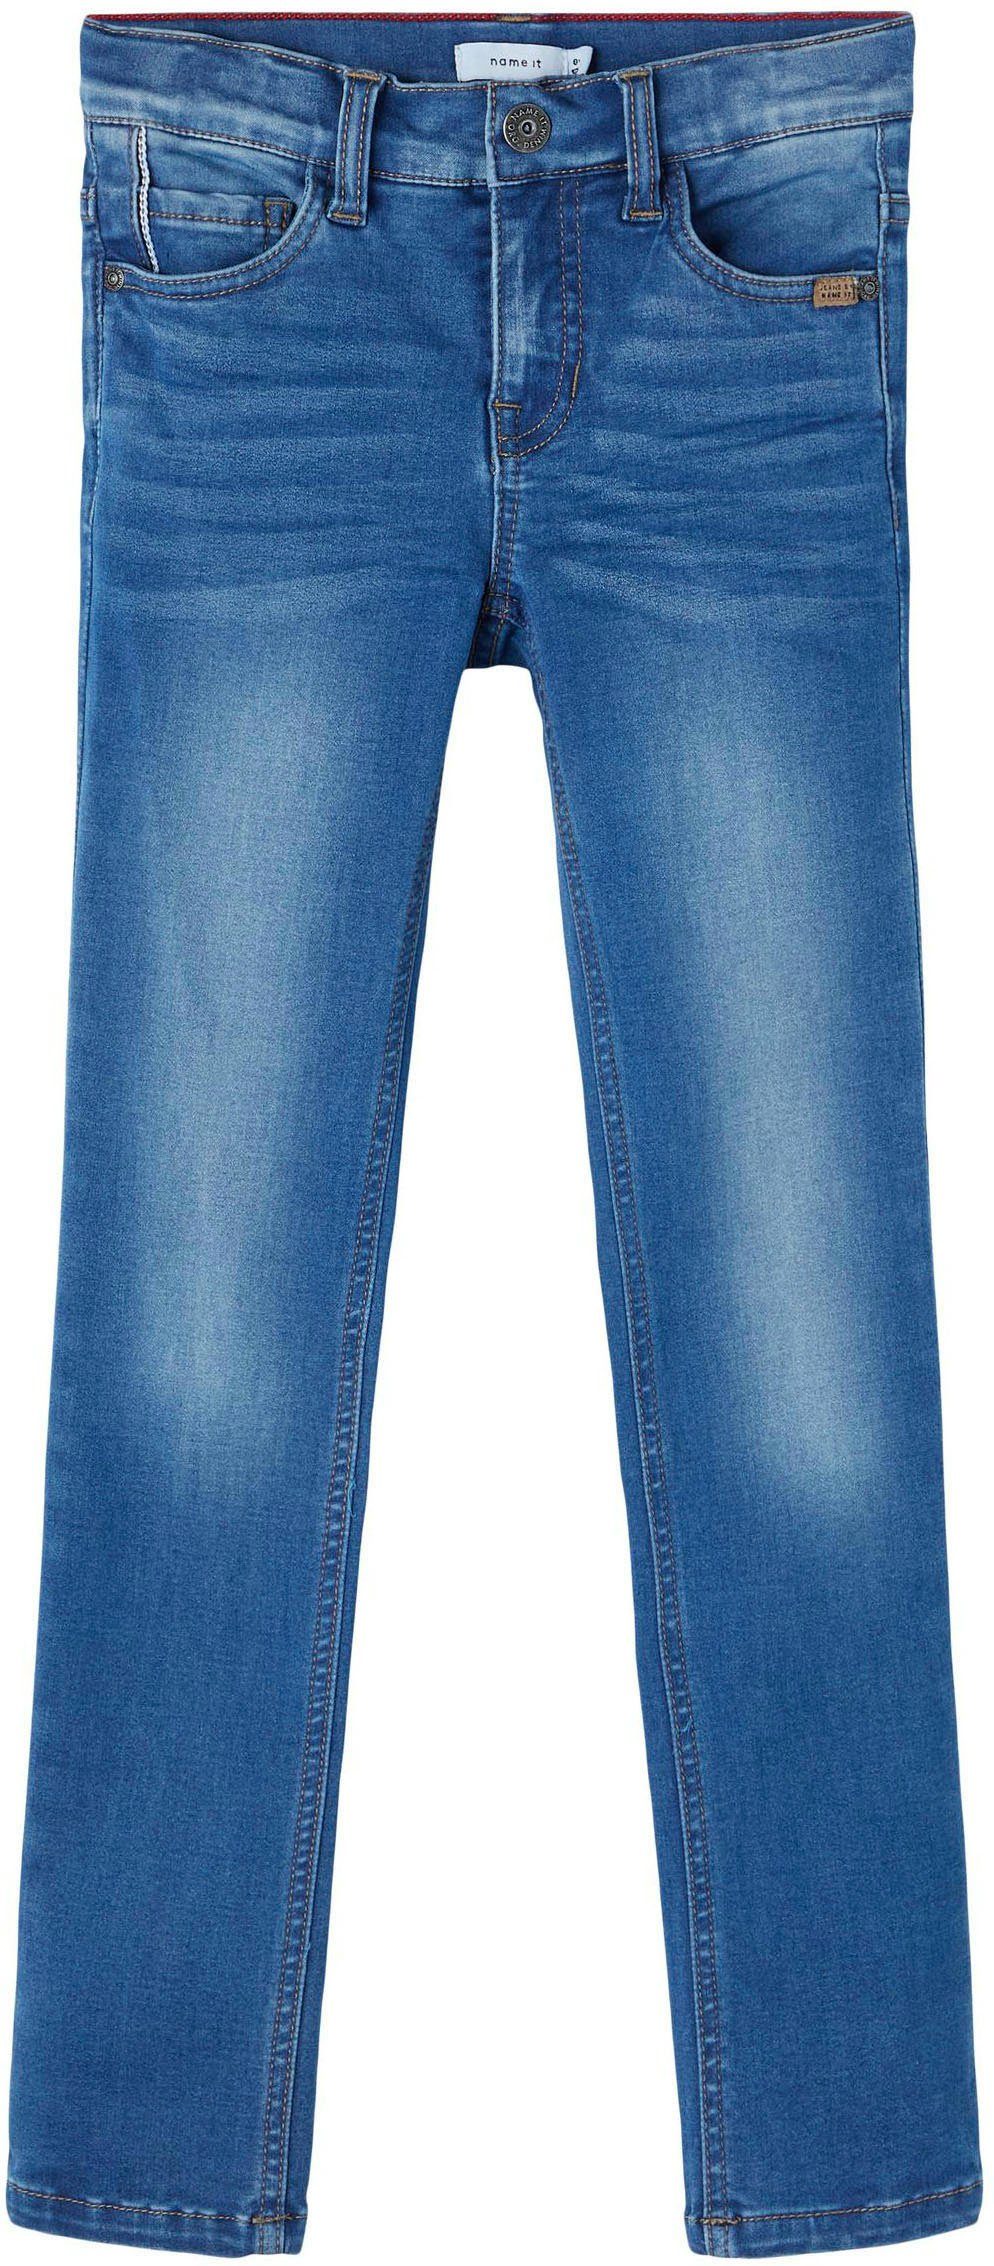 It medium Stretch-Jeans blue denim Name